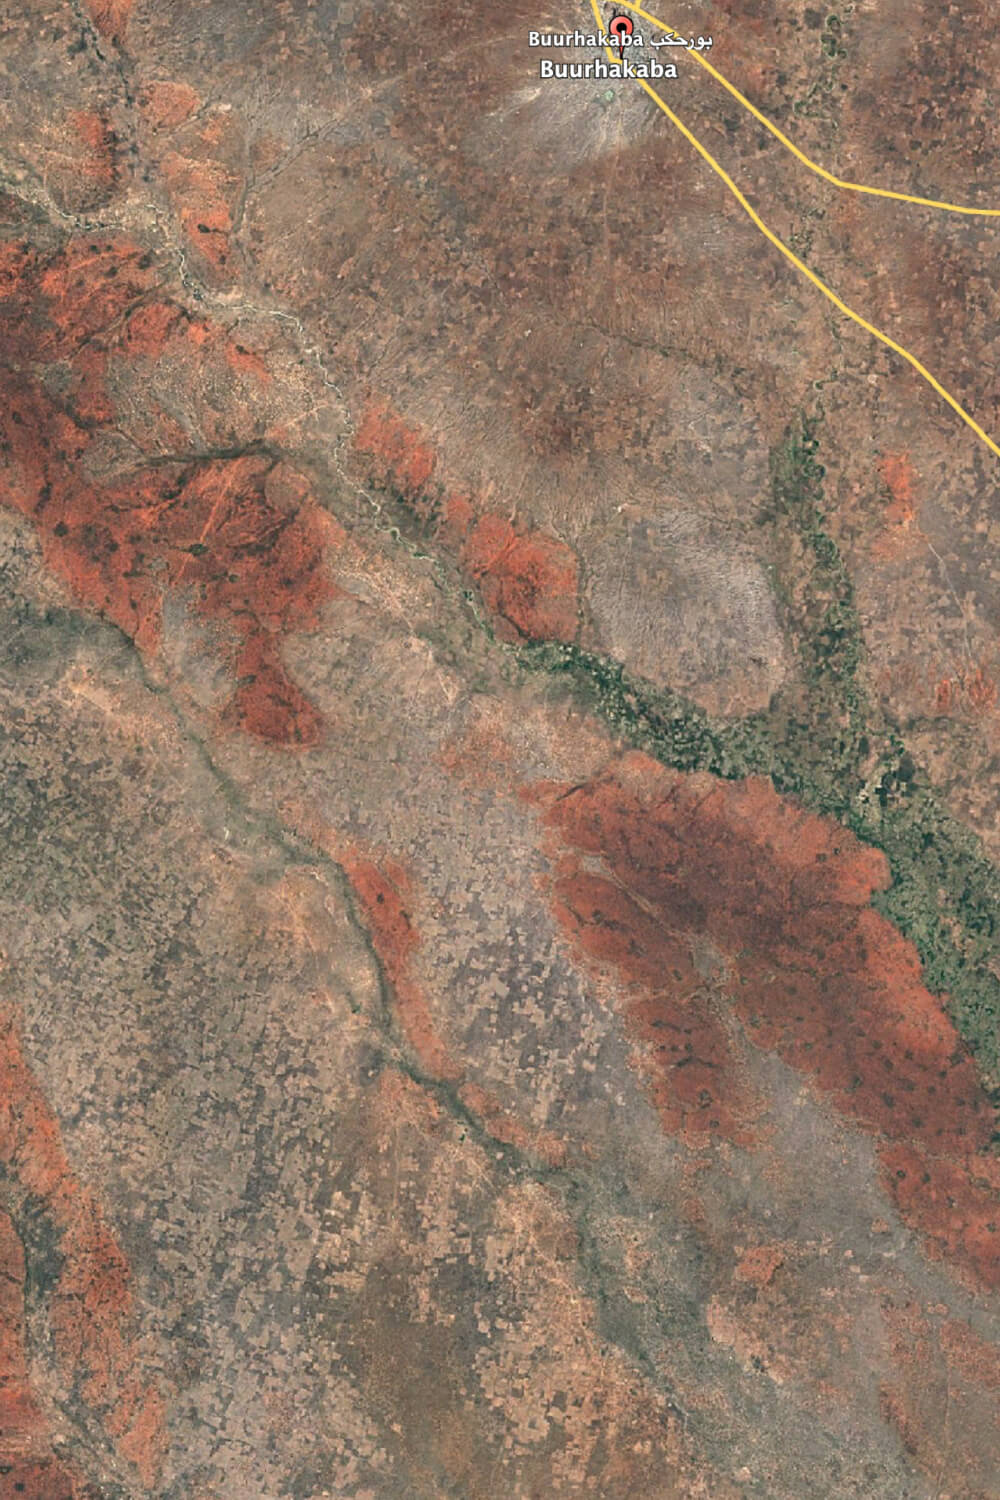 Satellitenbild Buurhakaba 2020